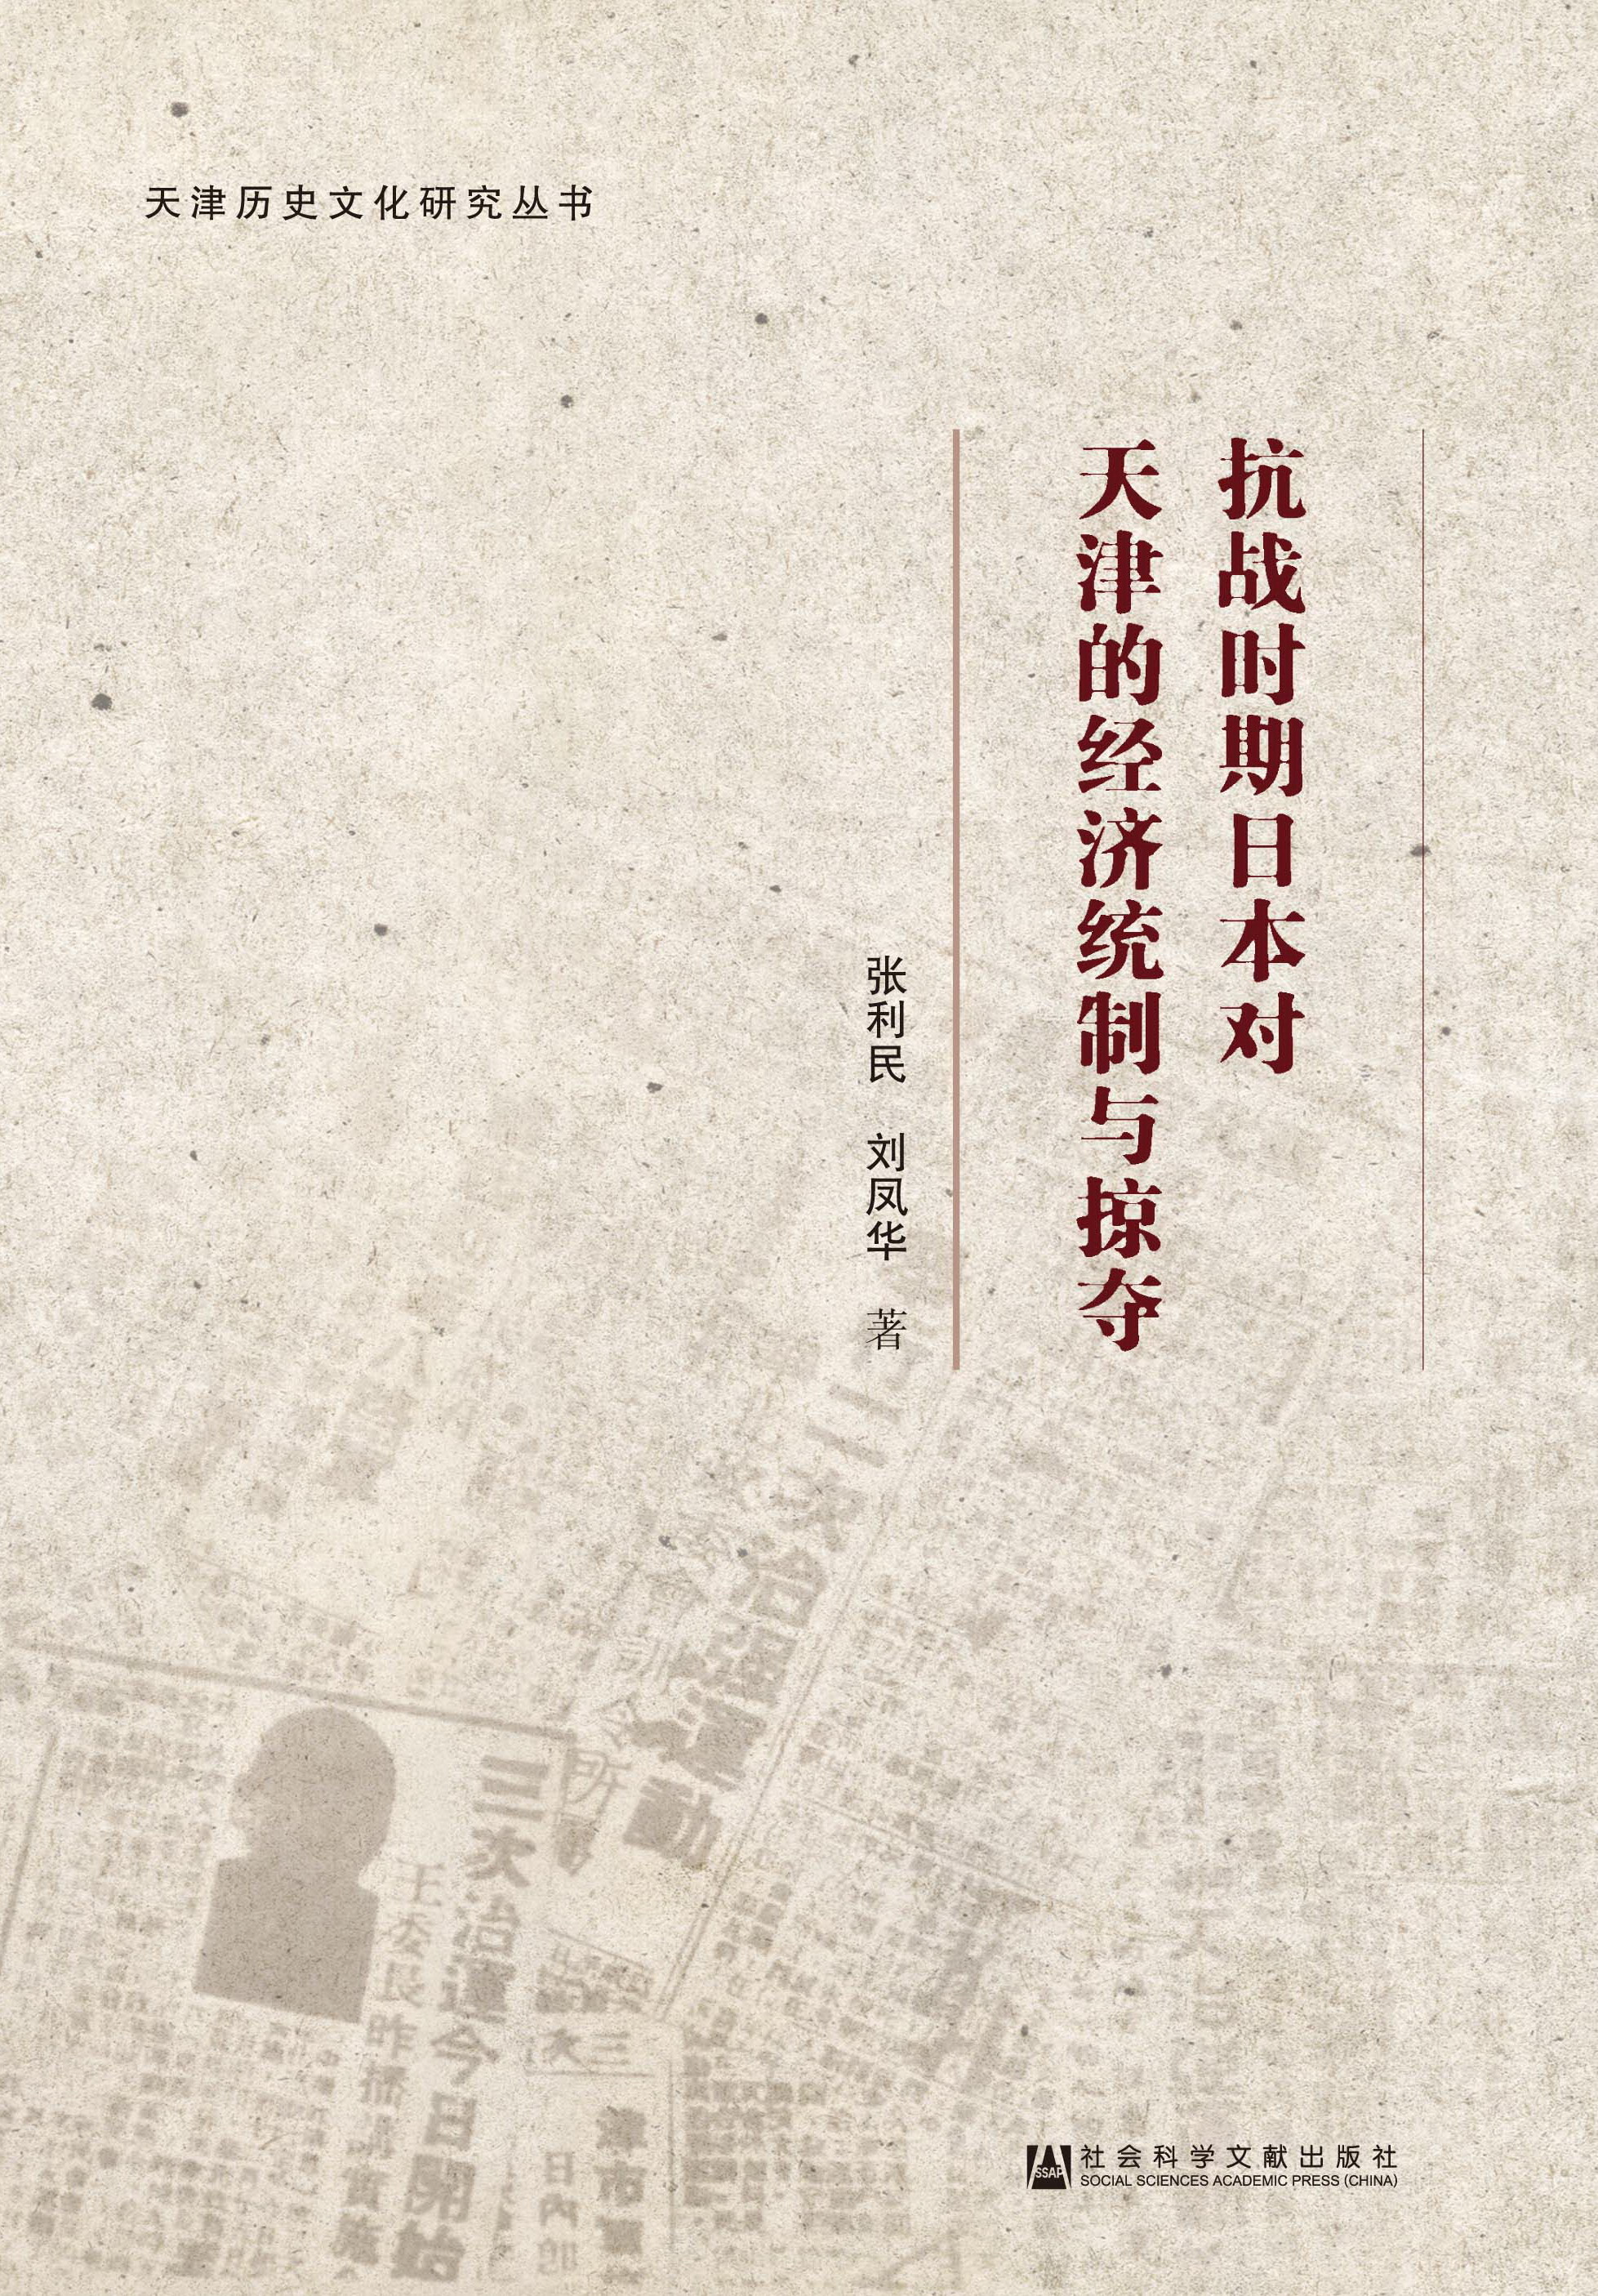 抗战时期日本对天津的经济统制与掠夺